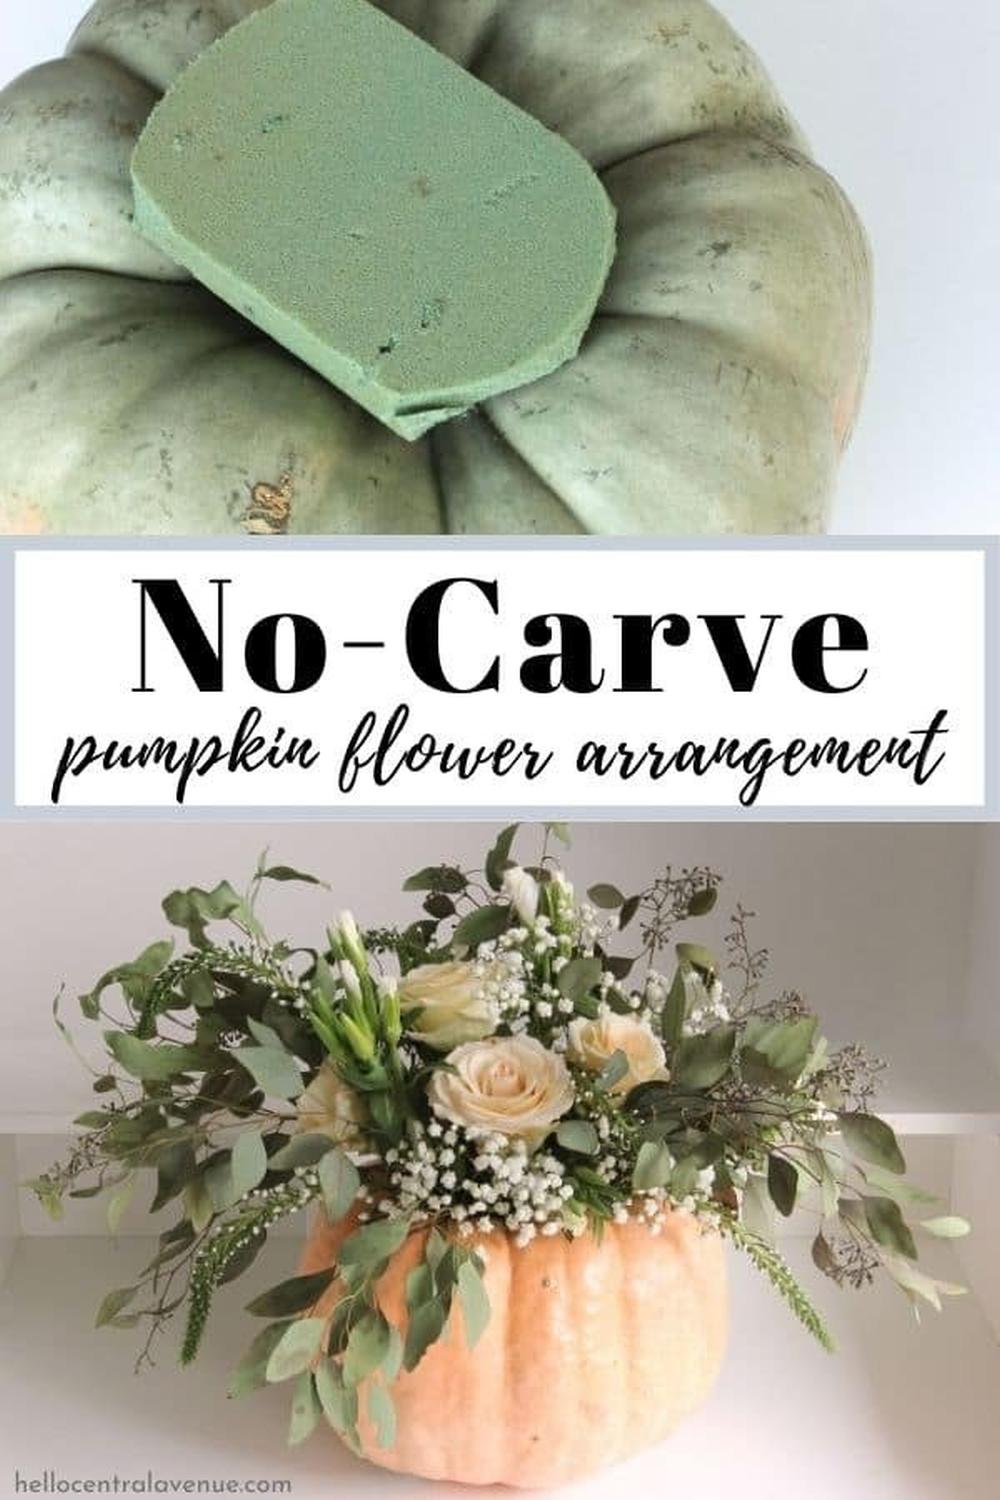 Pumpkin flower arrangement thanksgiving centerpiece ideas